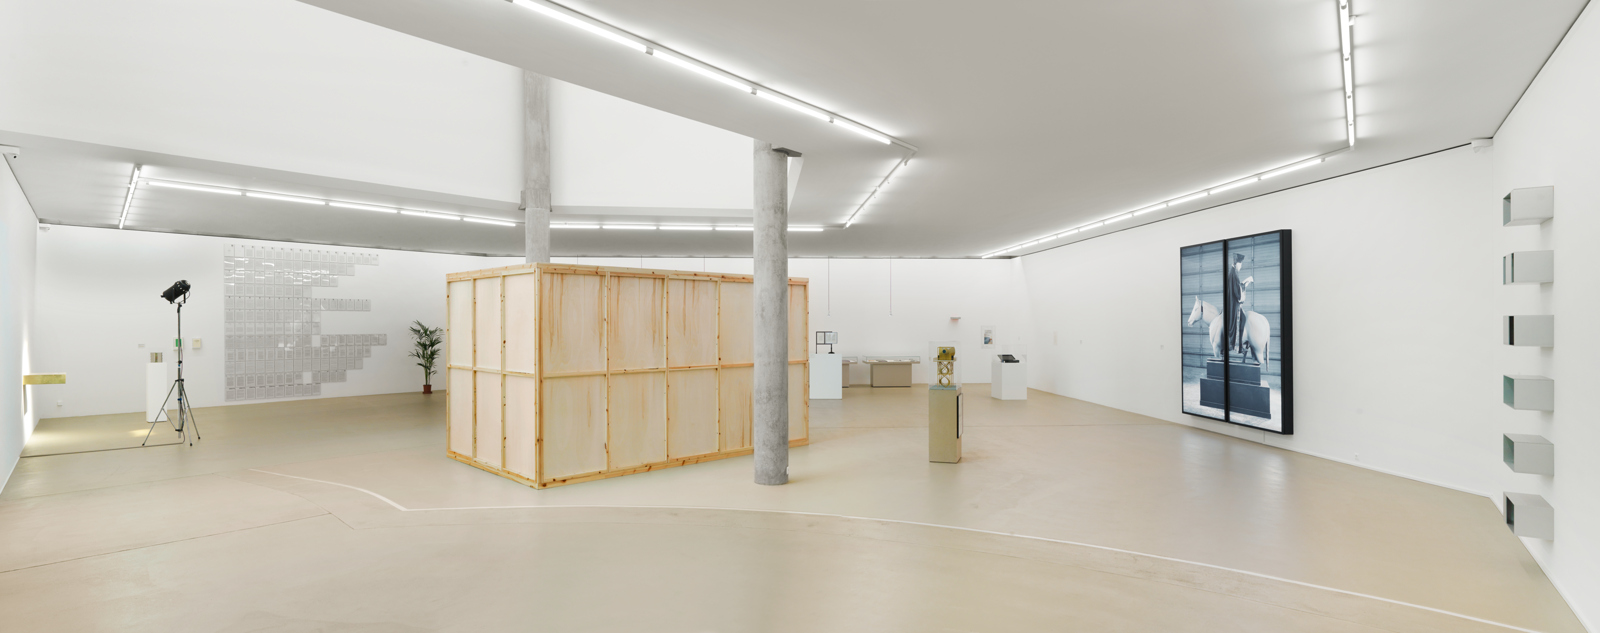 Rodney Graham / "Through the Forest", exhibition view, Museum für Gegenwartskunst Basel  / 2010